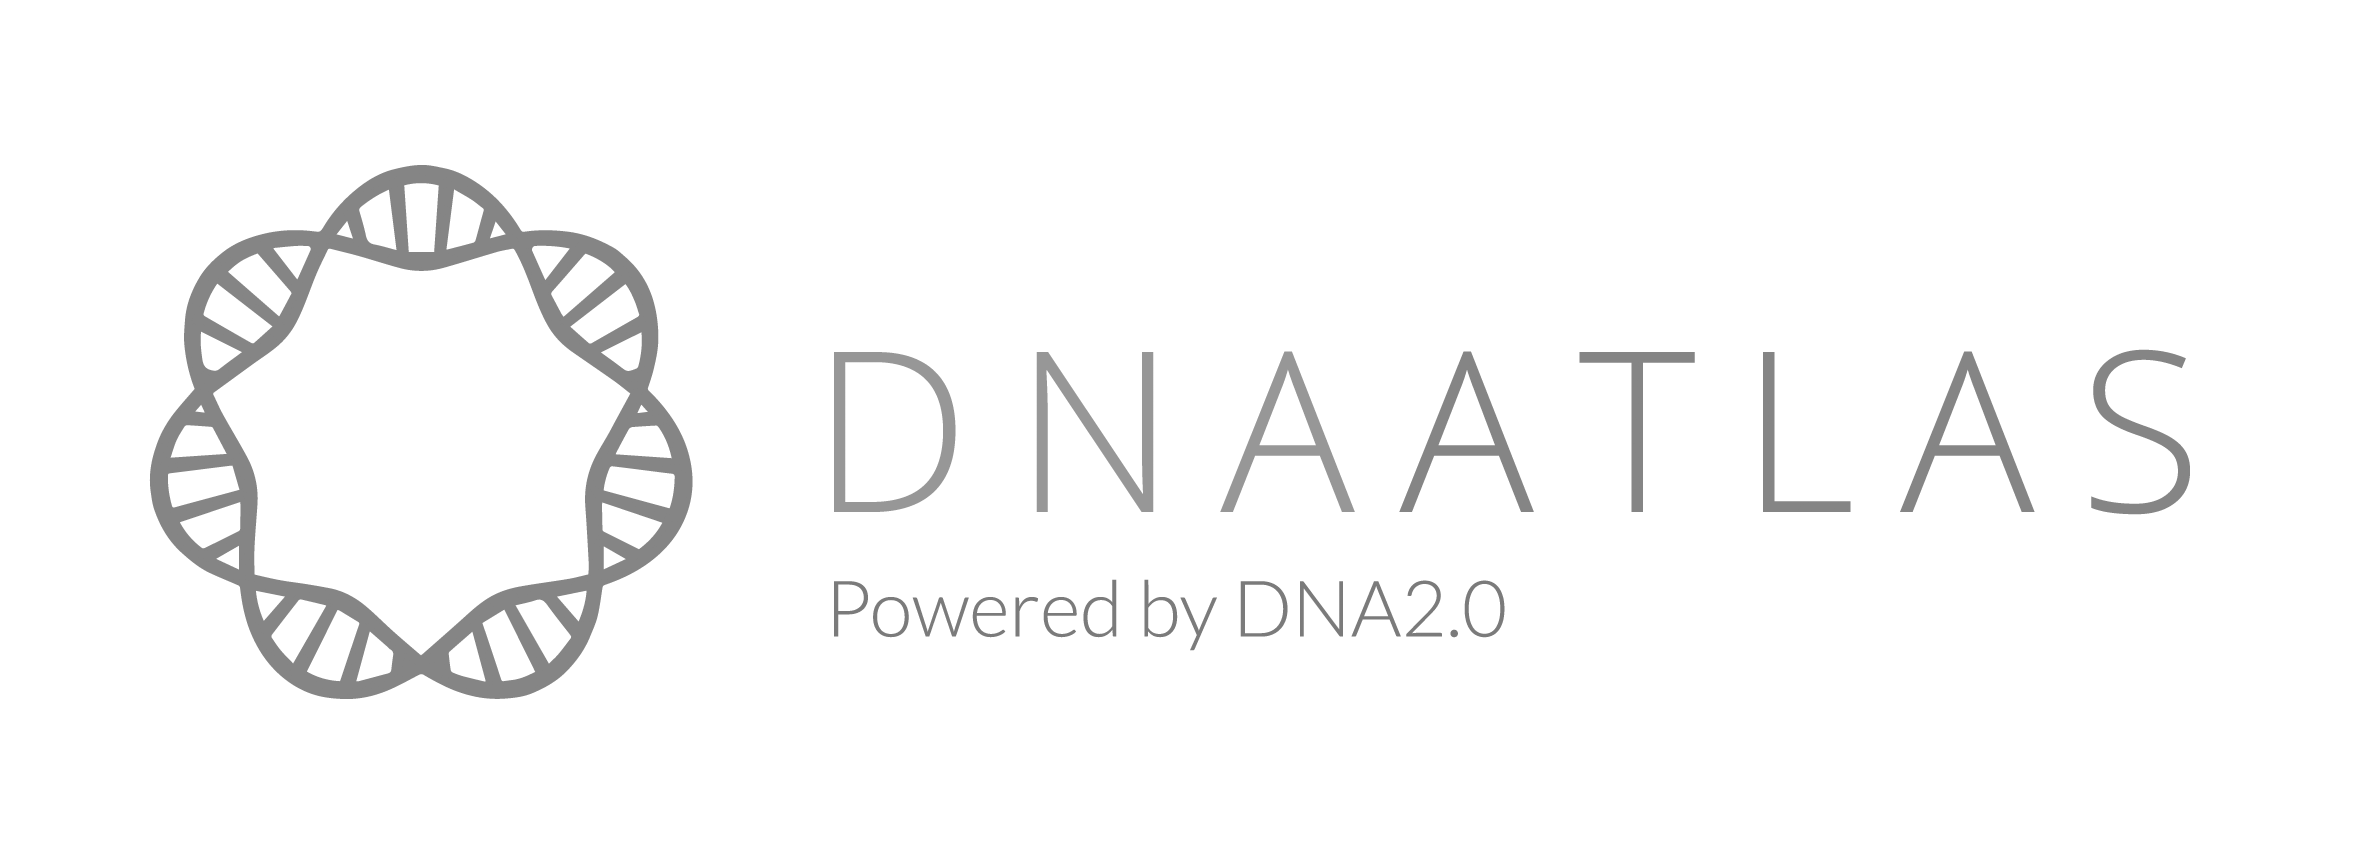 DNA Atlas